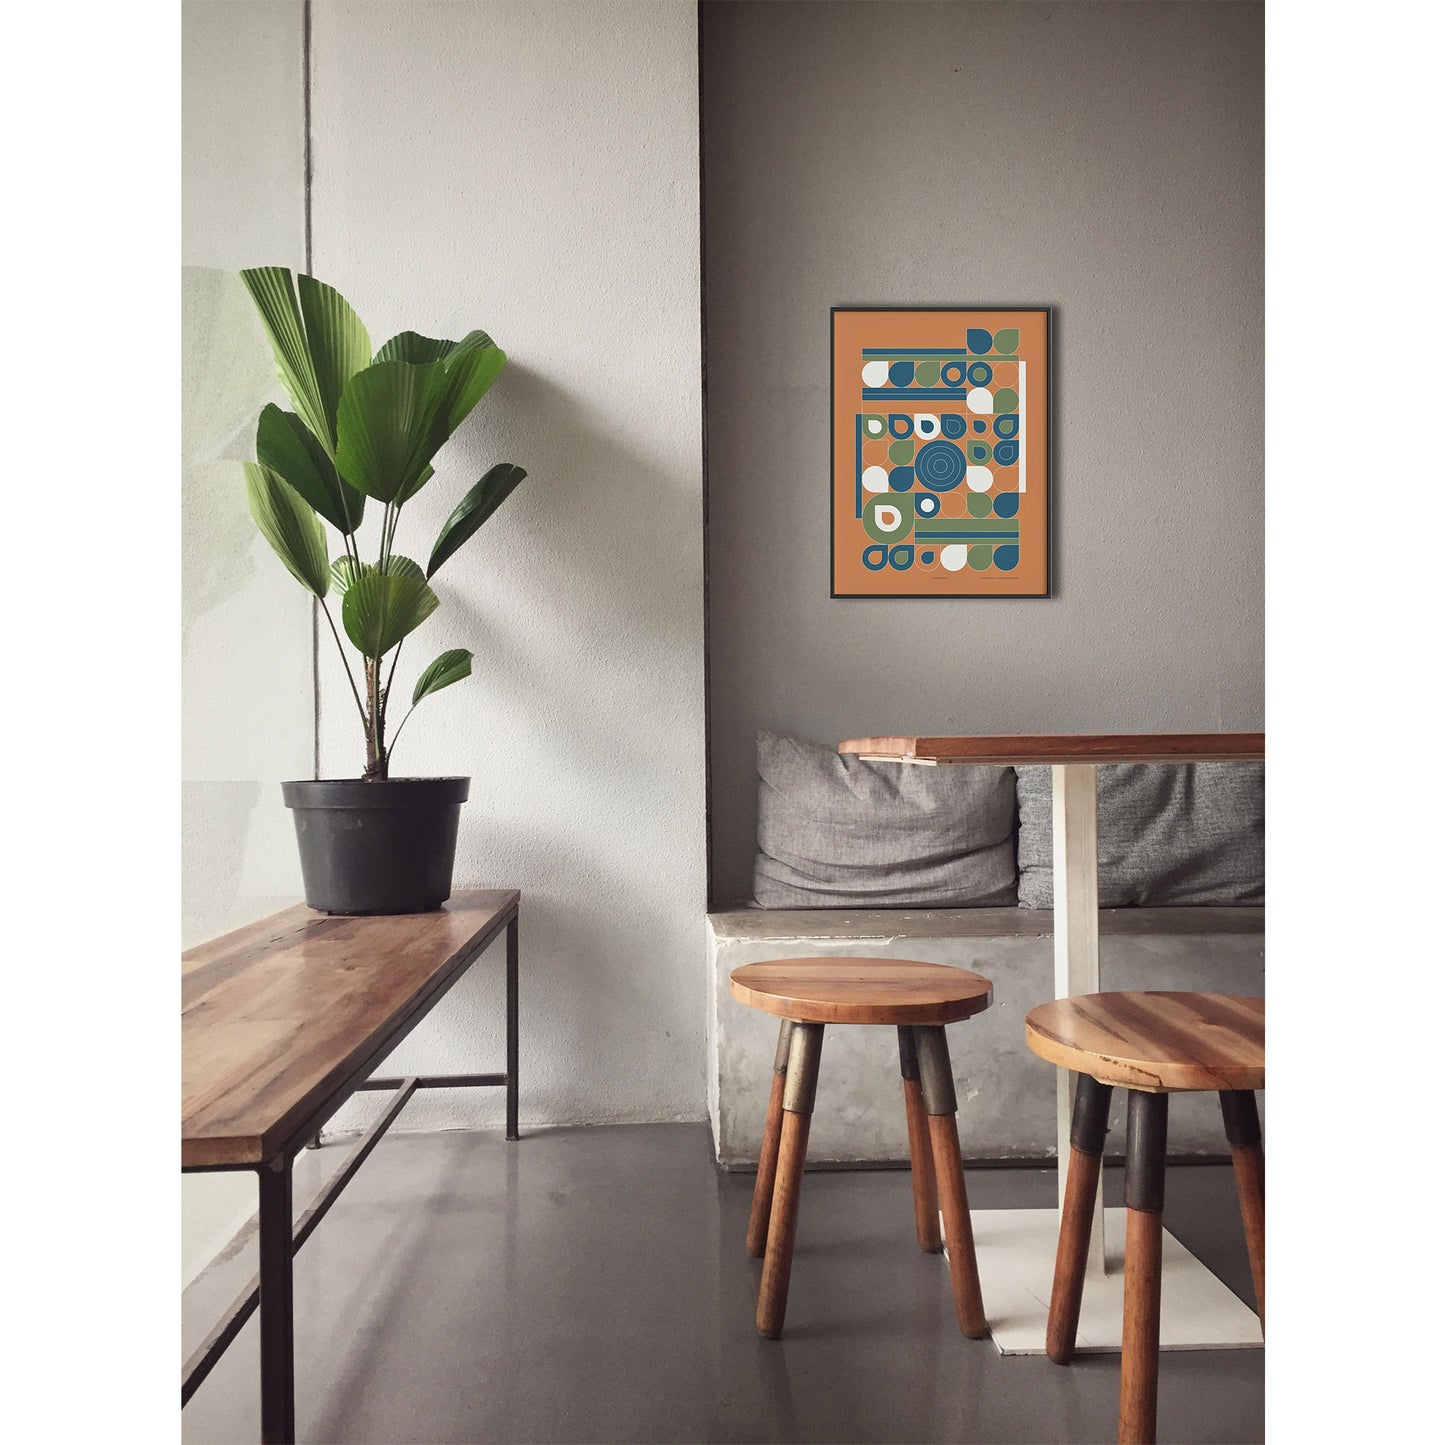 Productafbeelding poster "jardin jaune" impressie foto ingelijst, hangend boven een tafel aan een wand in een interieur met plant en krukjes